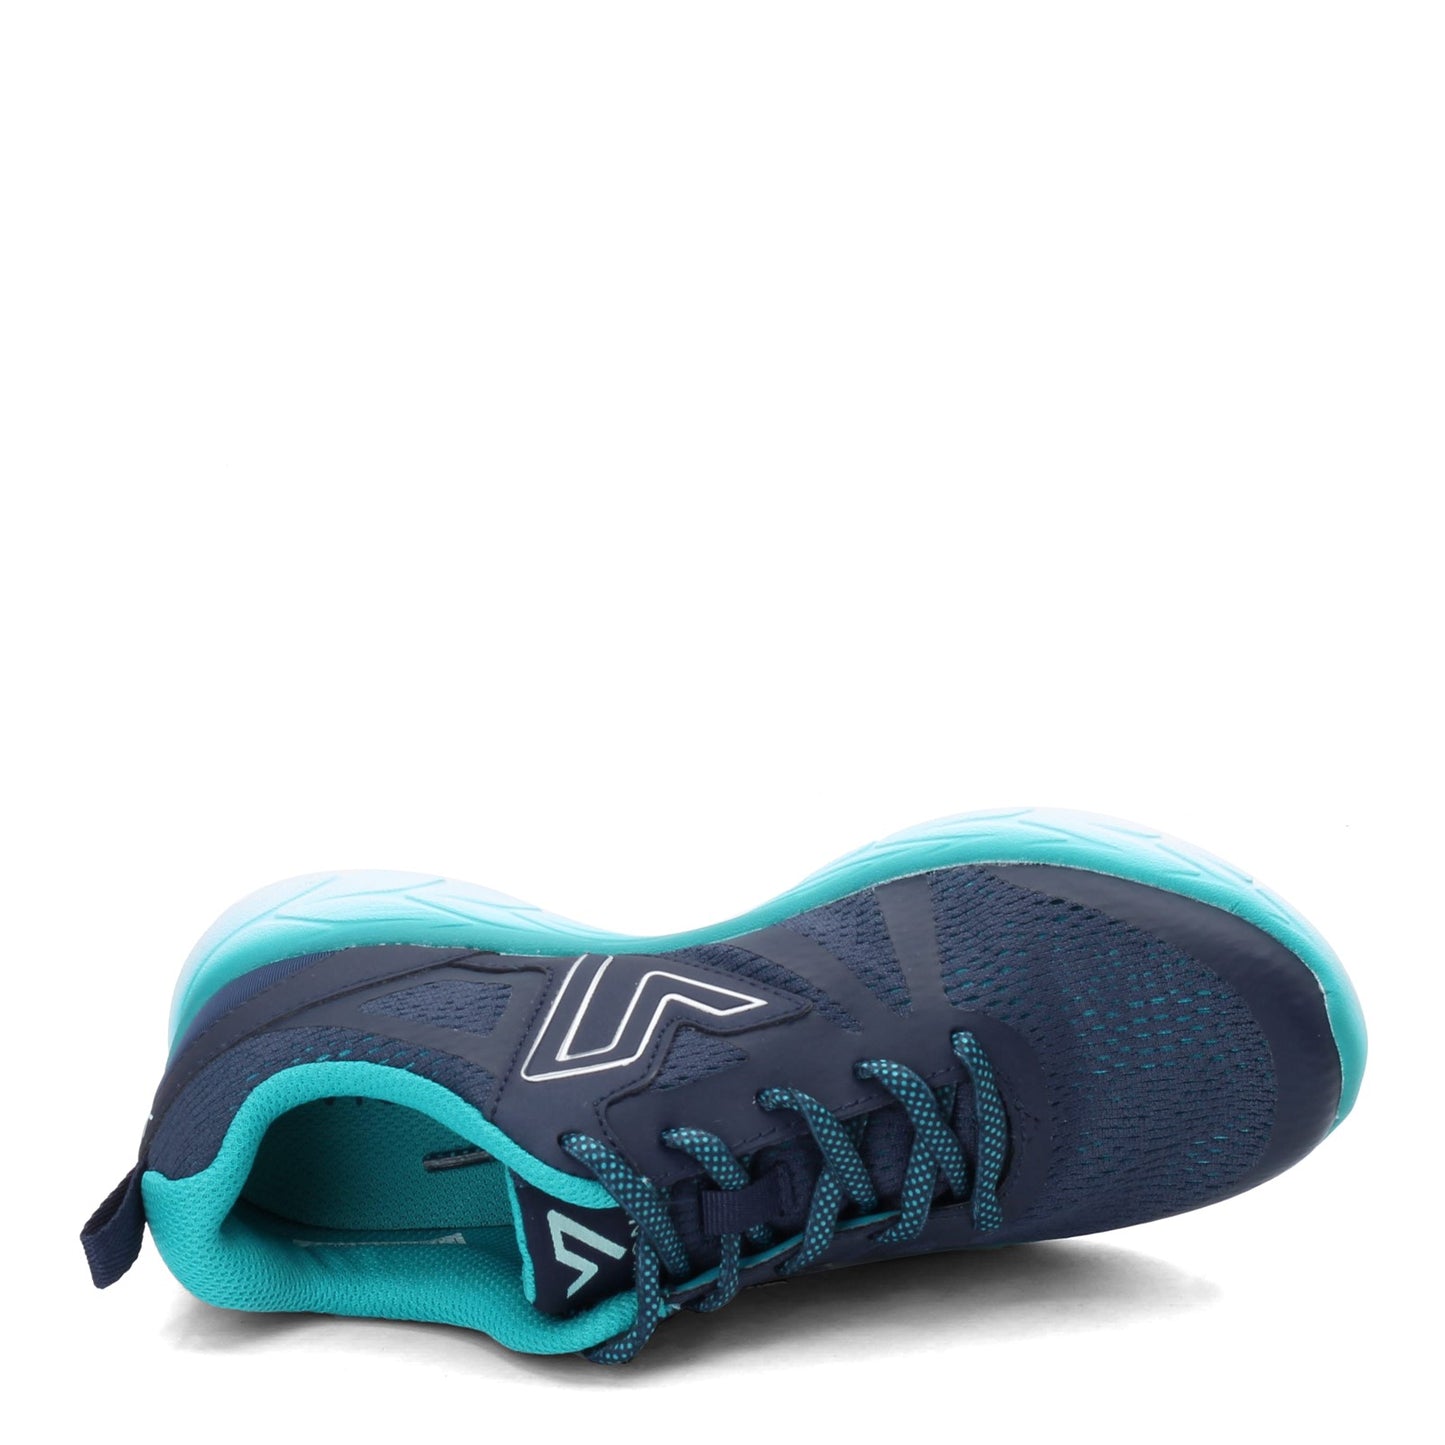 Peltz Shoes  Women's Vionic Miles Sneaker BLUE 335MILES-BLUTEL